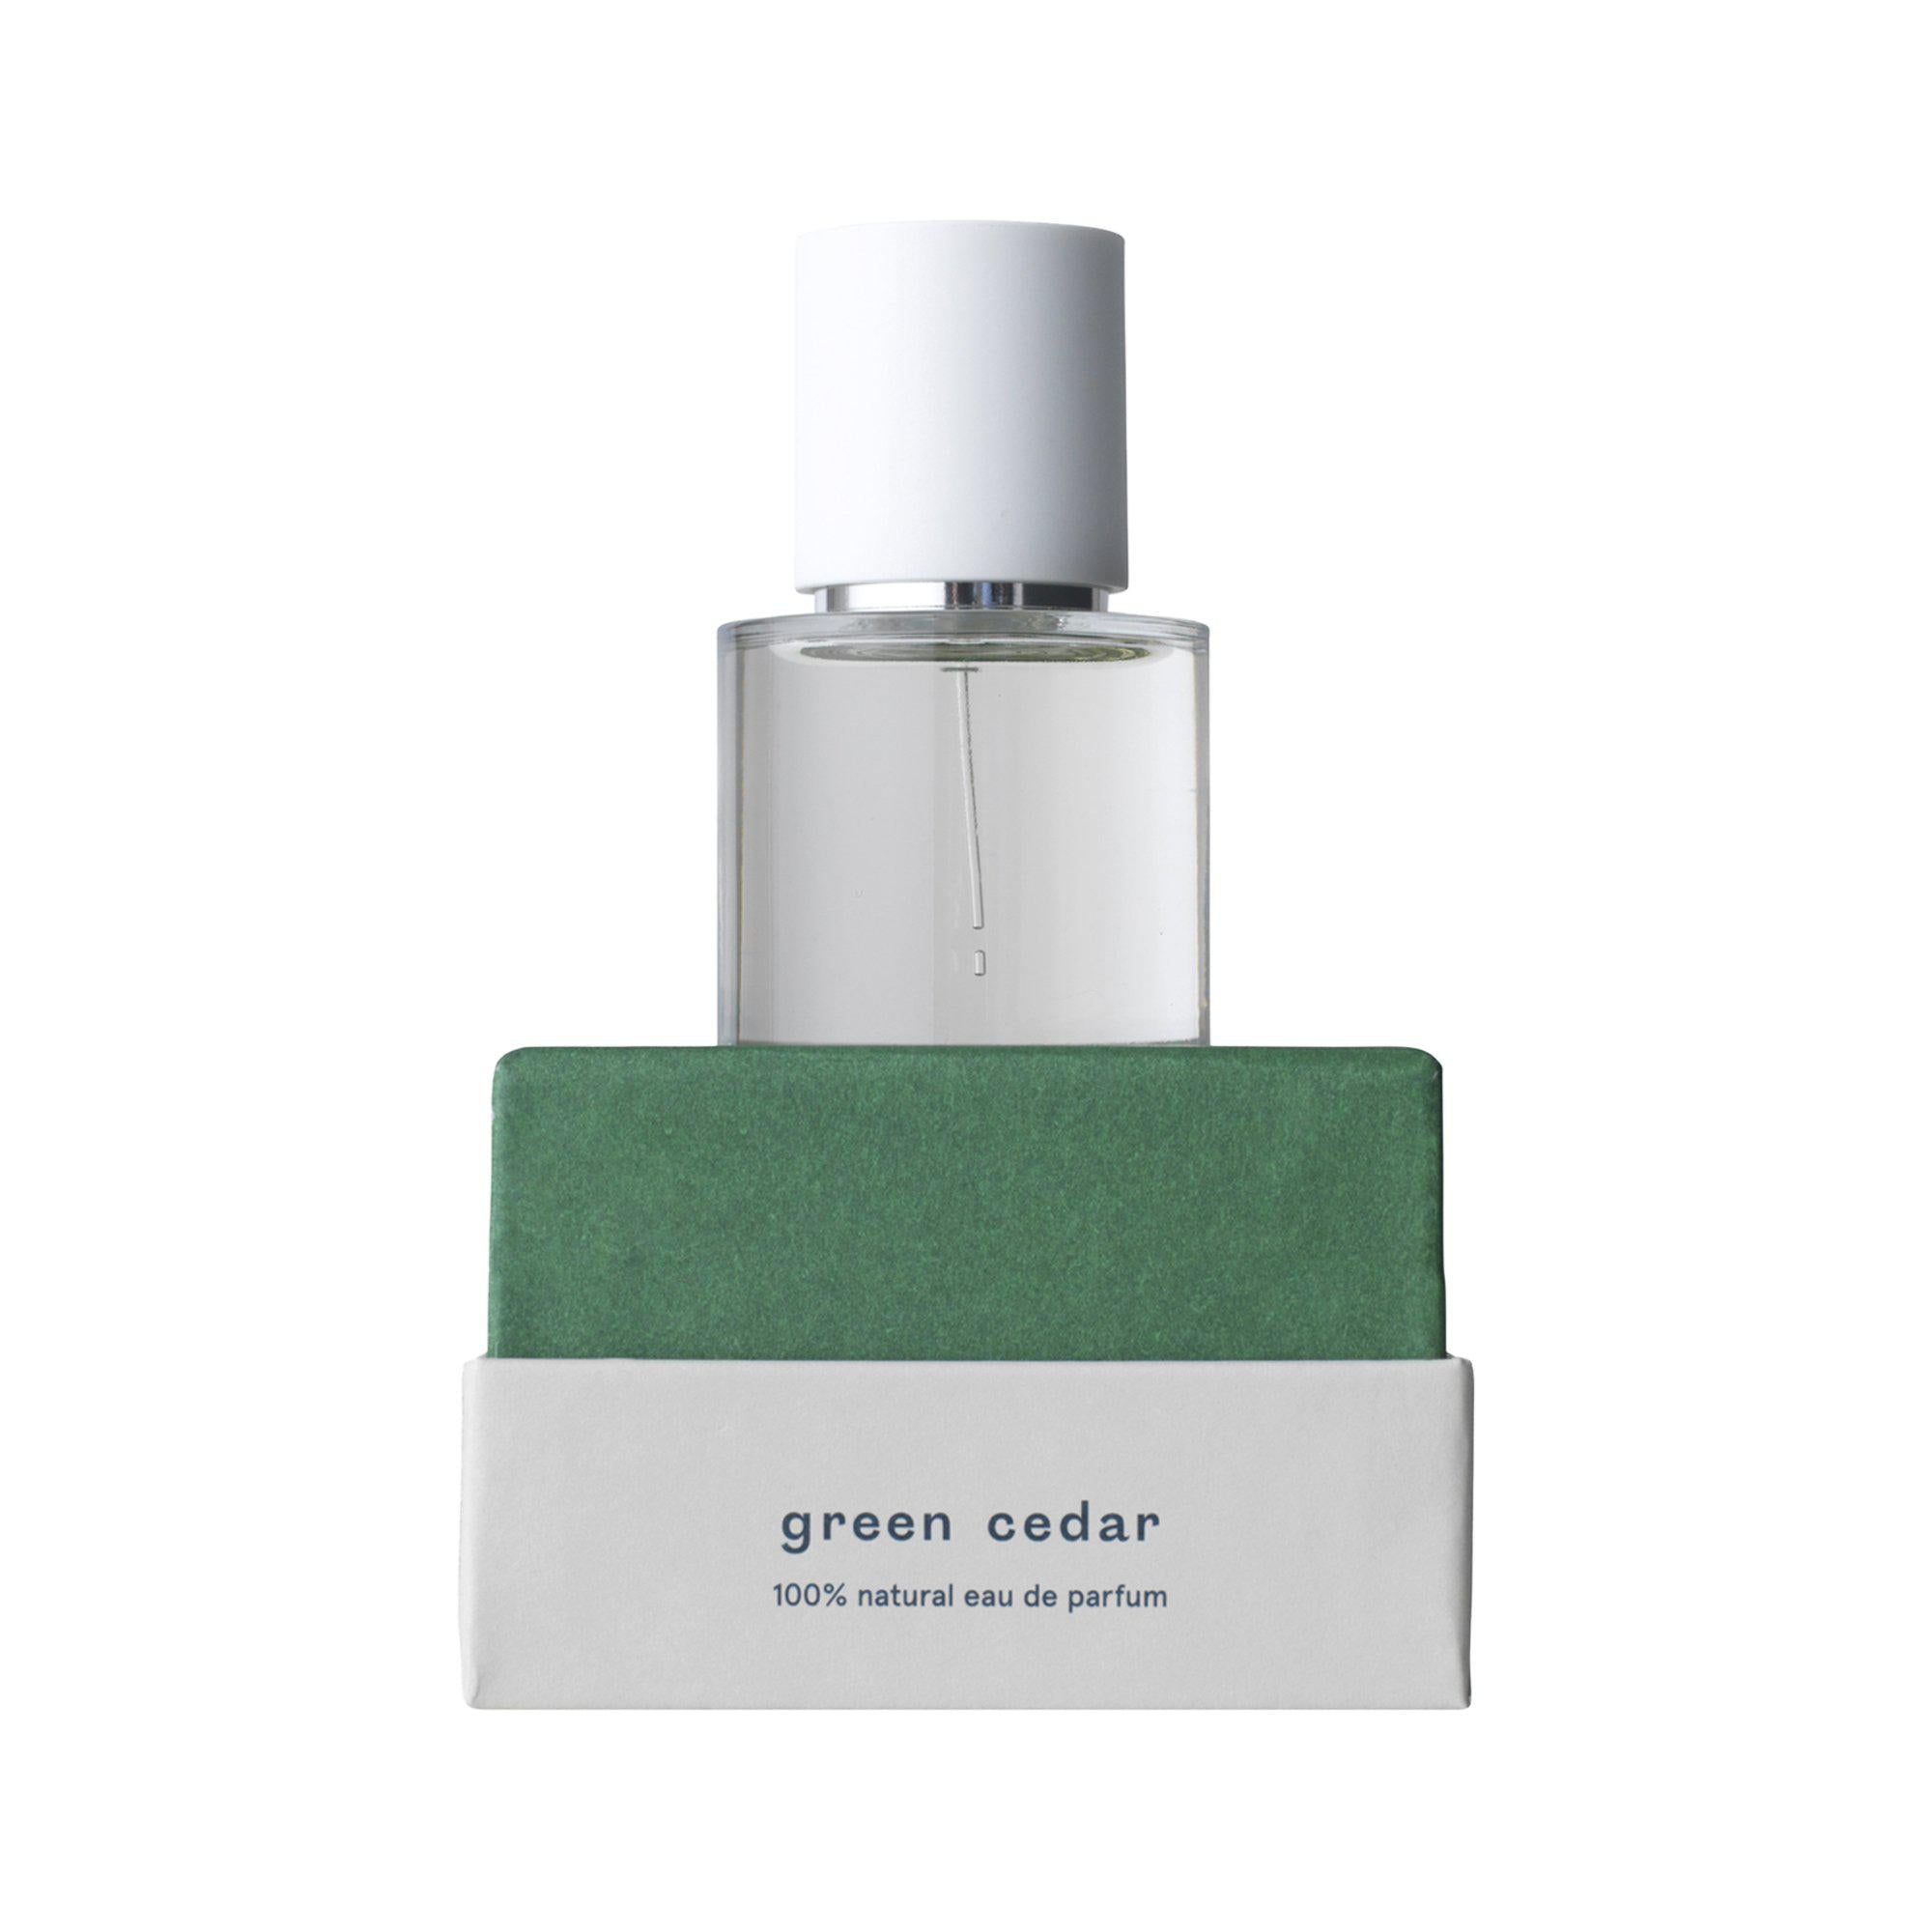 Indisponible : Parfum Naturel - Green Cedar Nicht verfügbar: Natürliches Parfüm - Grüne Zeder - Abel Odor